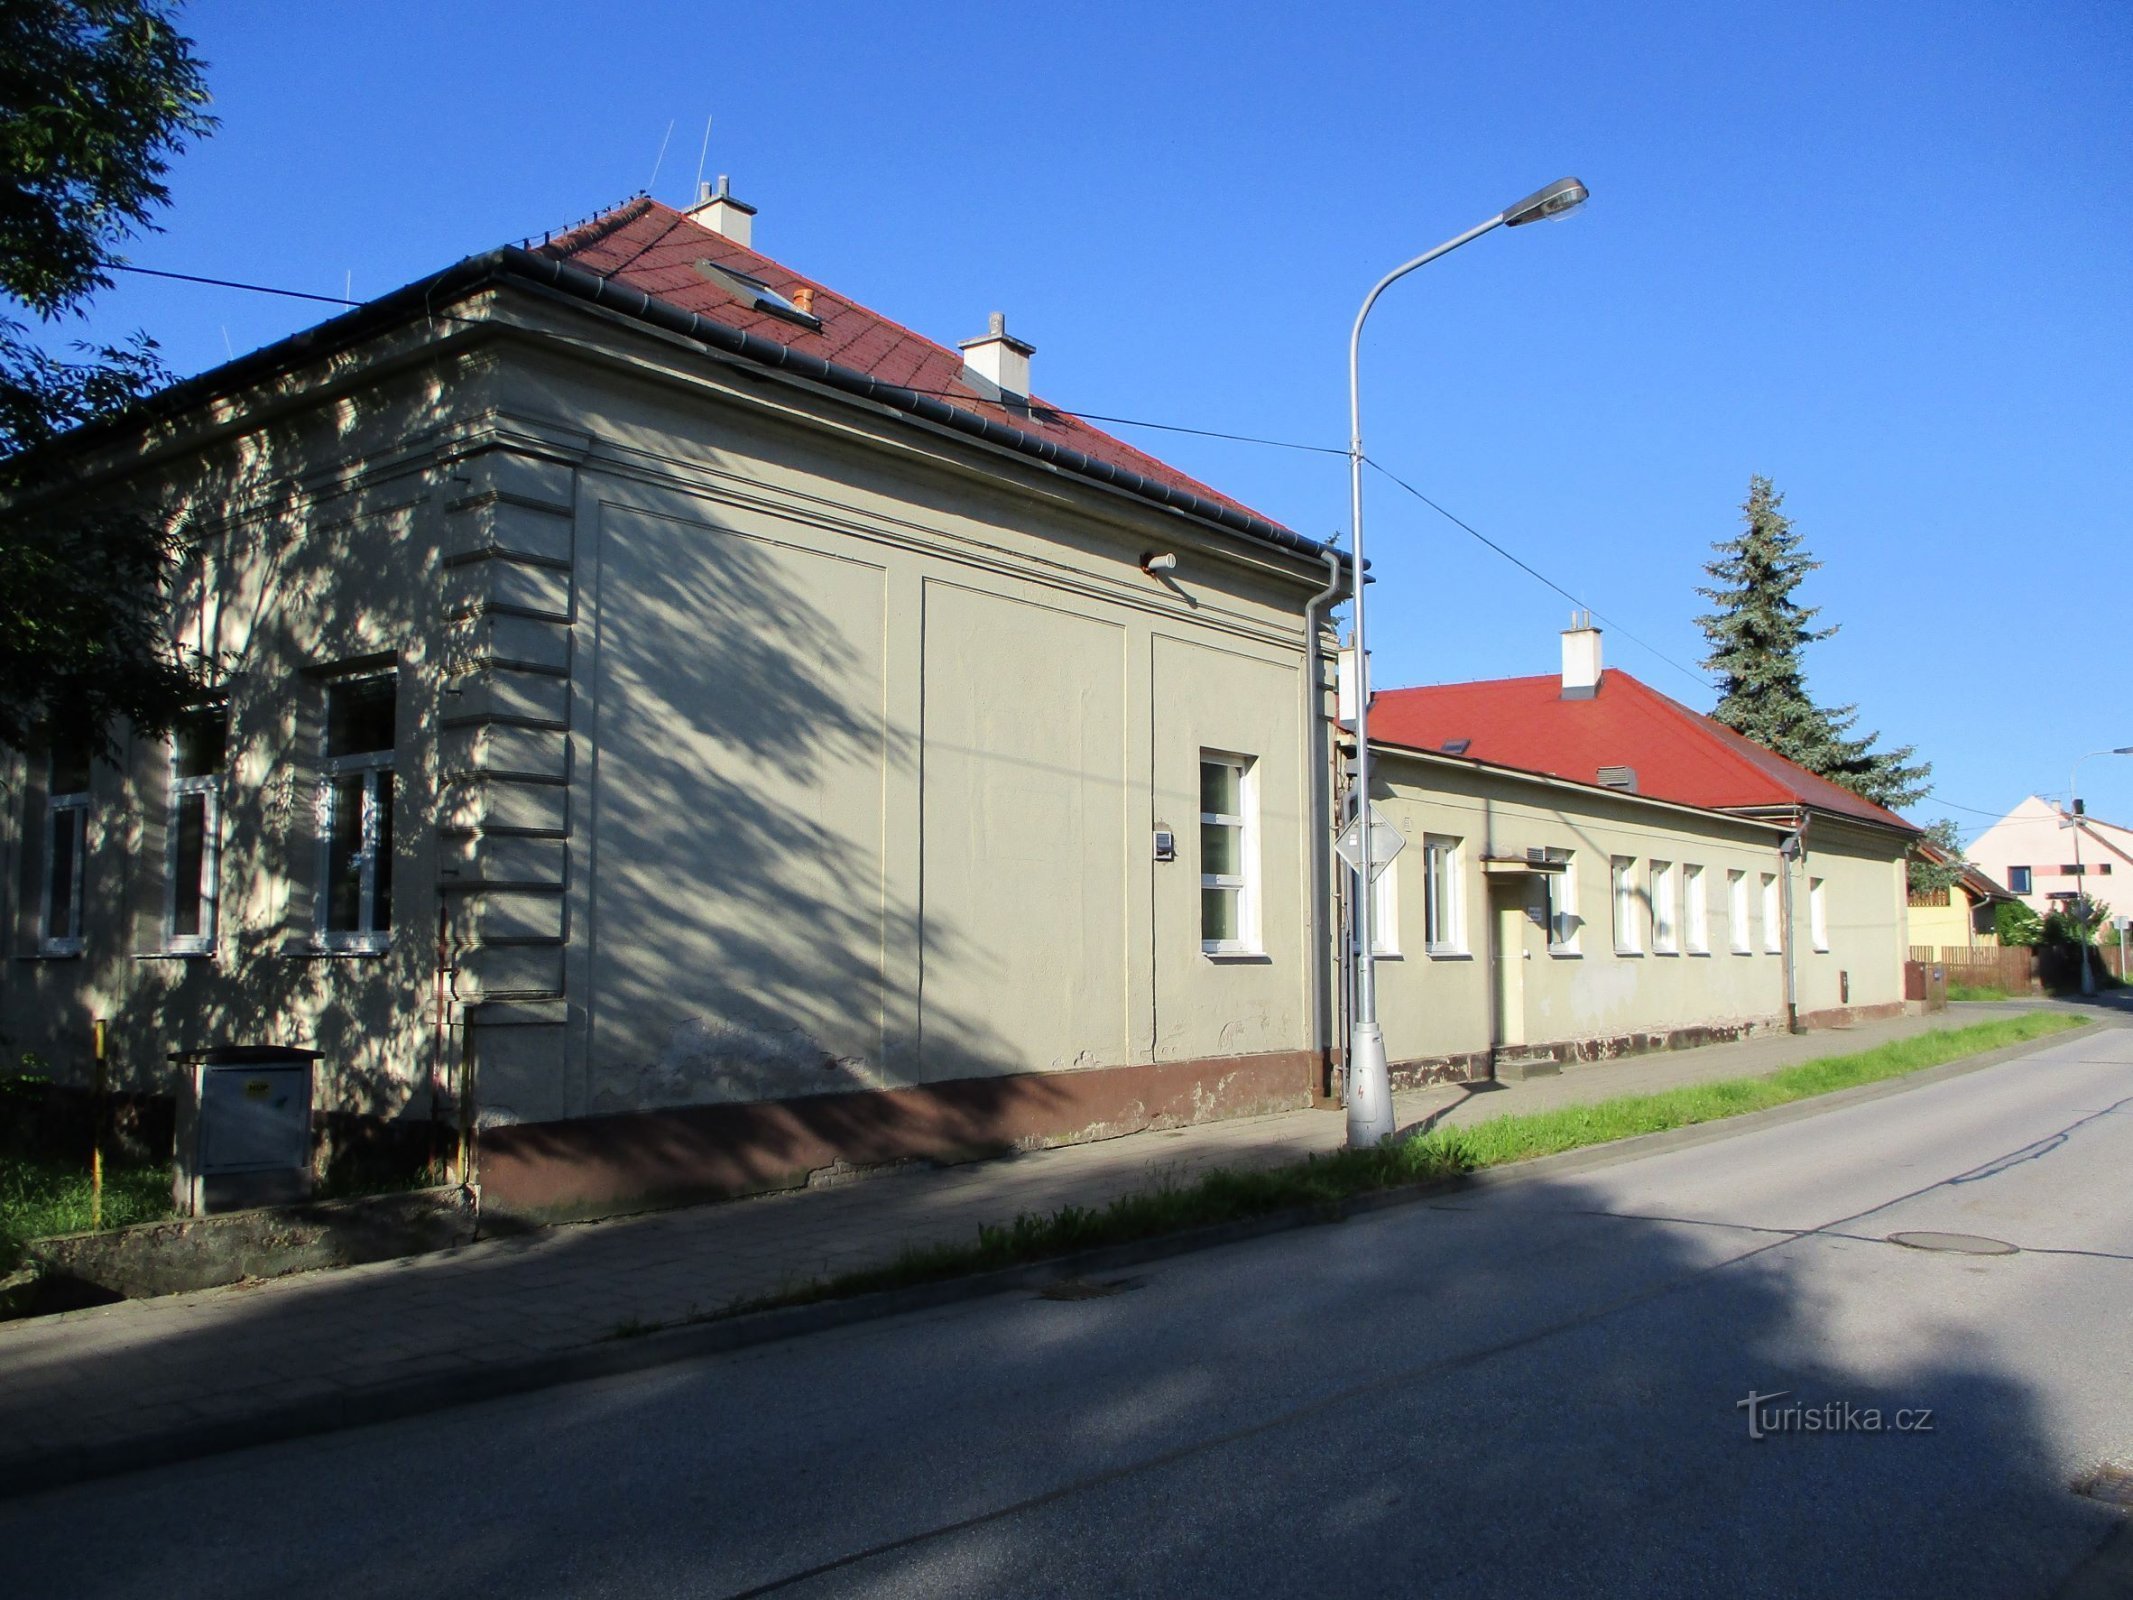 Scuola a Březhrad (Hradec Králové, 9.6.2019/XNUMX/XNUMX)